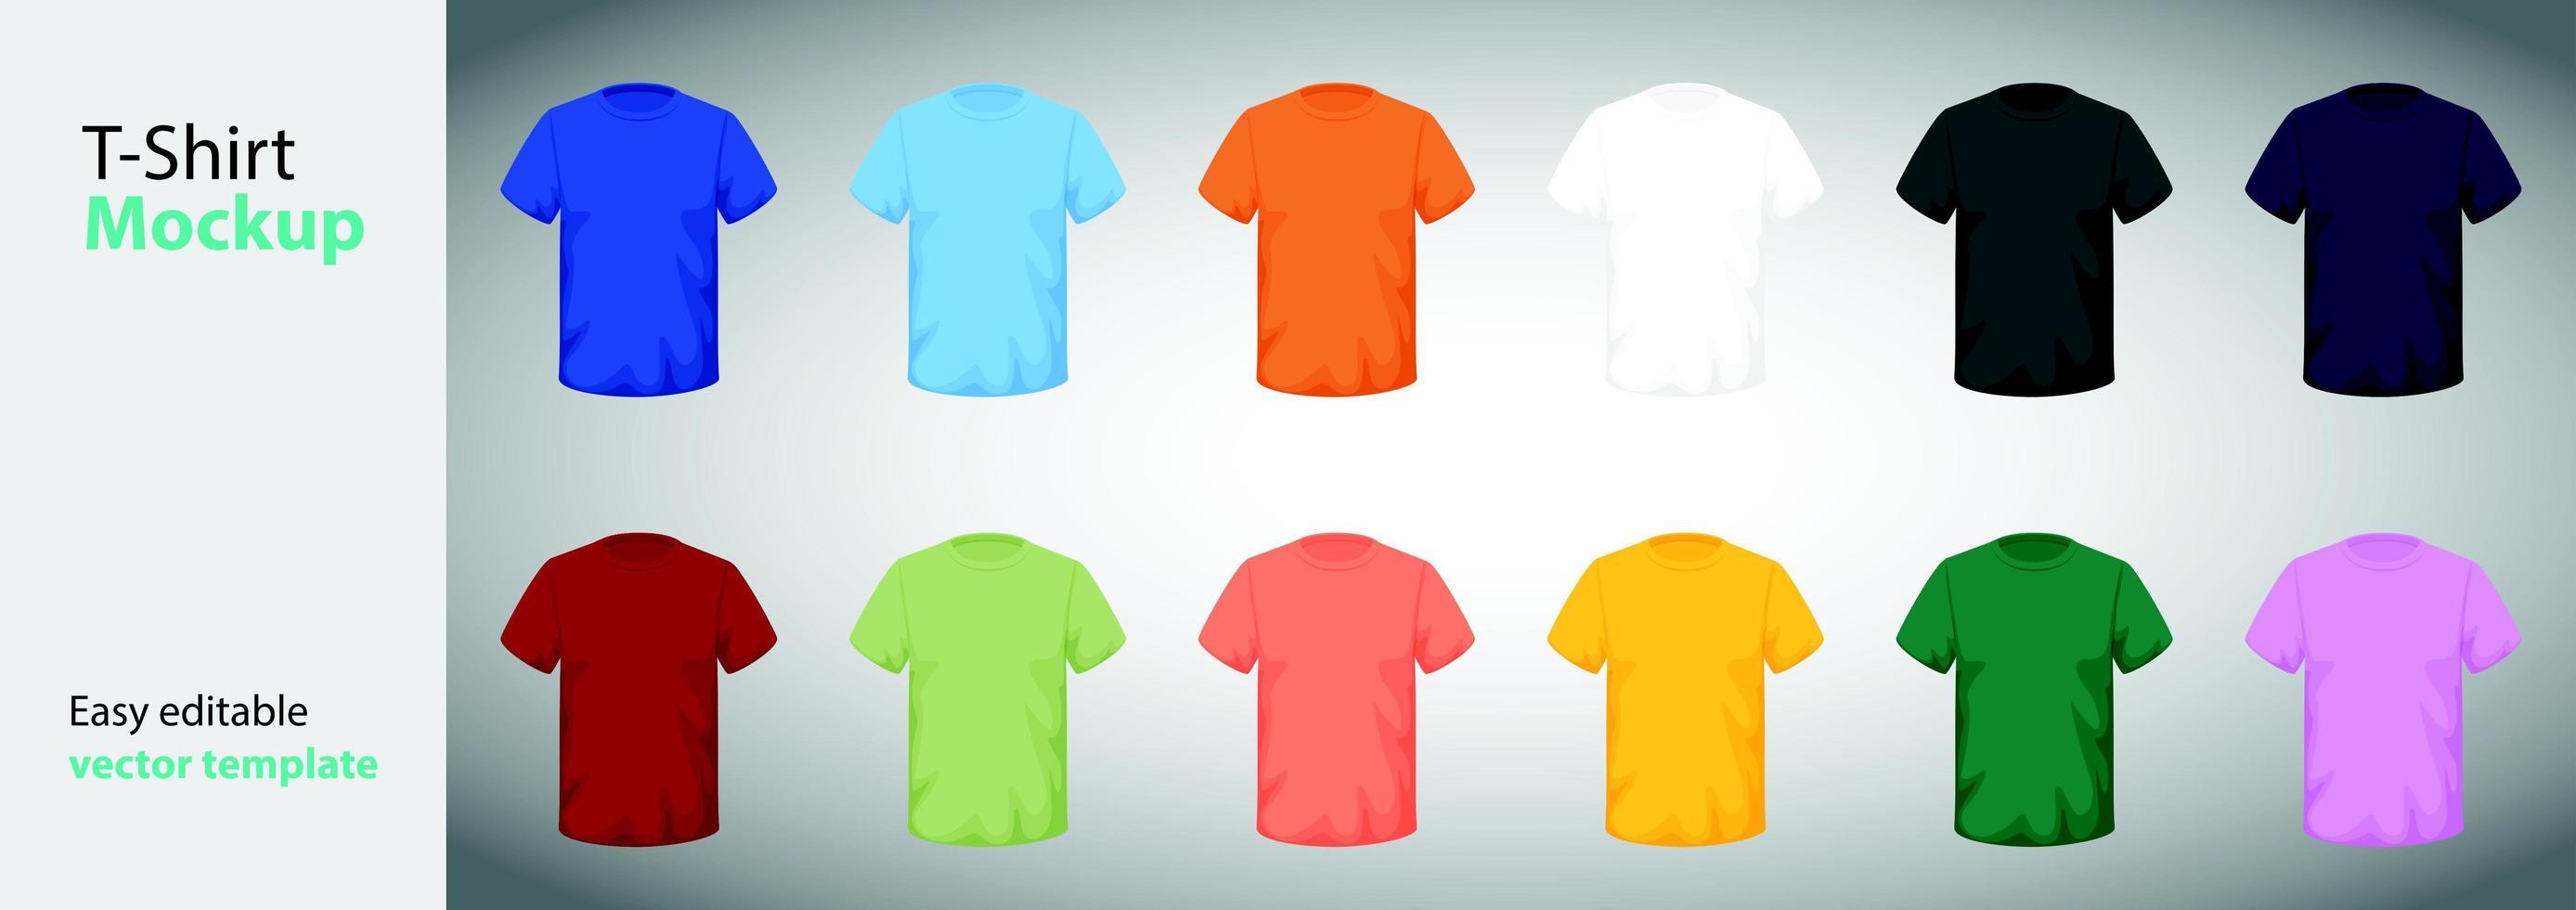 Plantillas de camisetas de diferentes tamaños y colores. vector